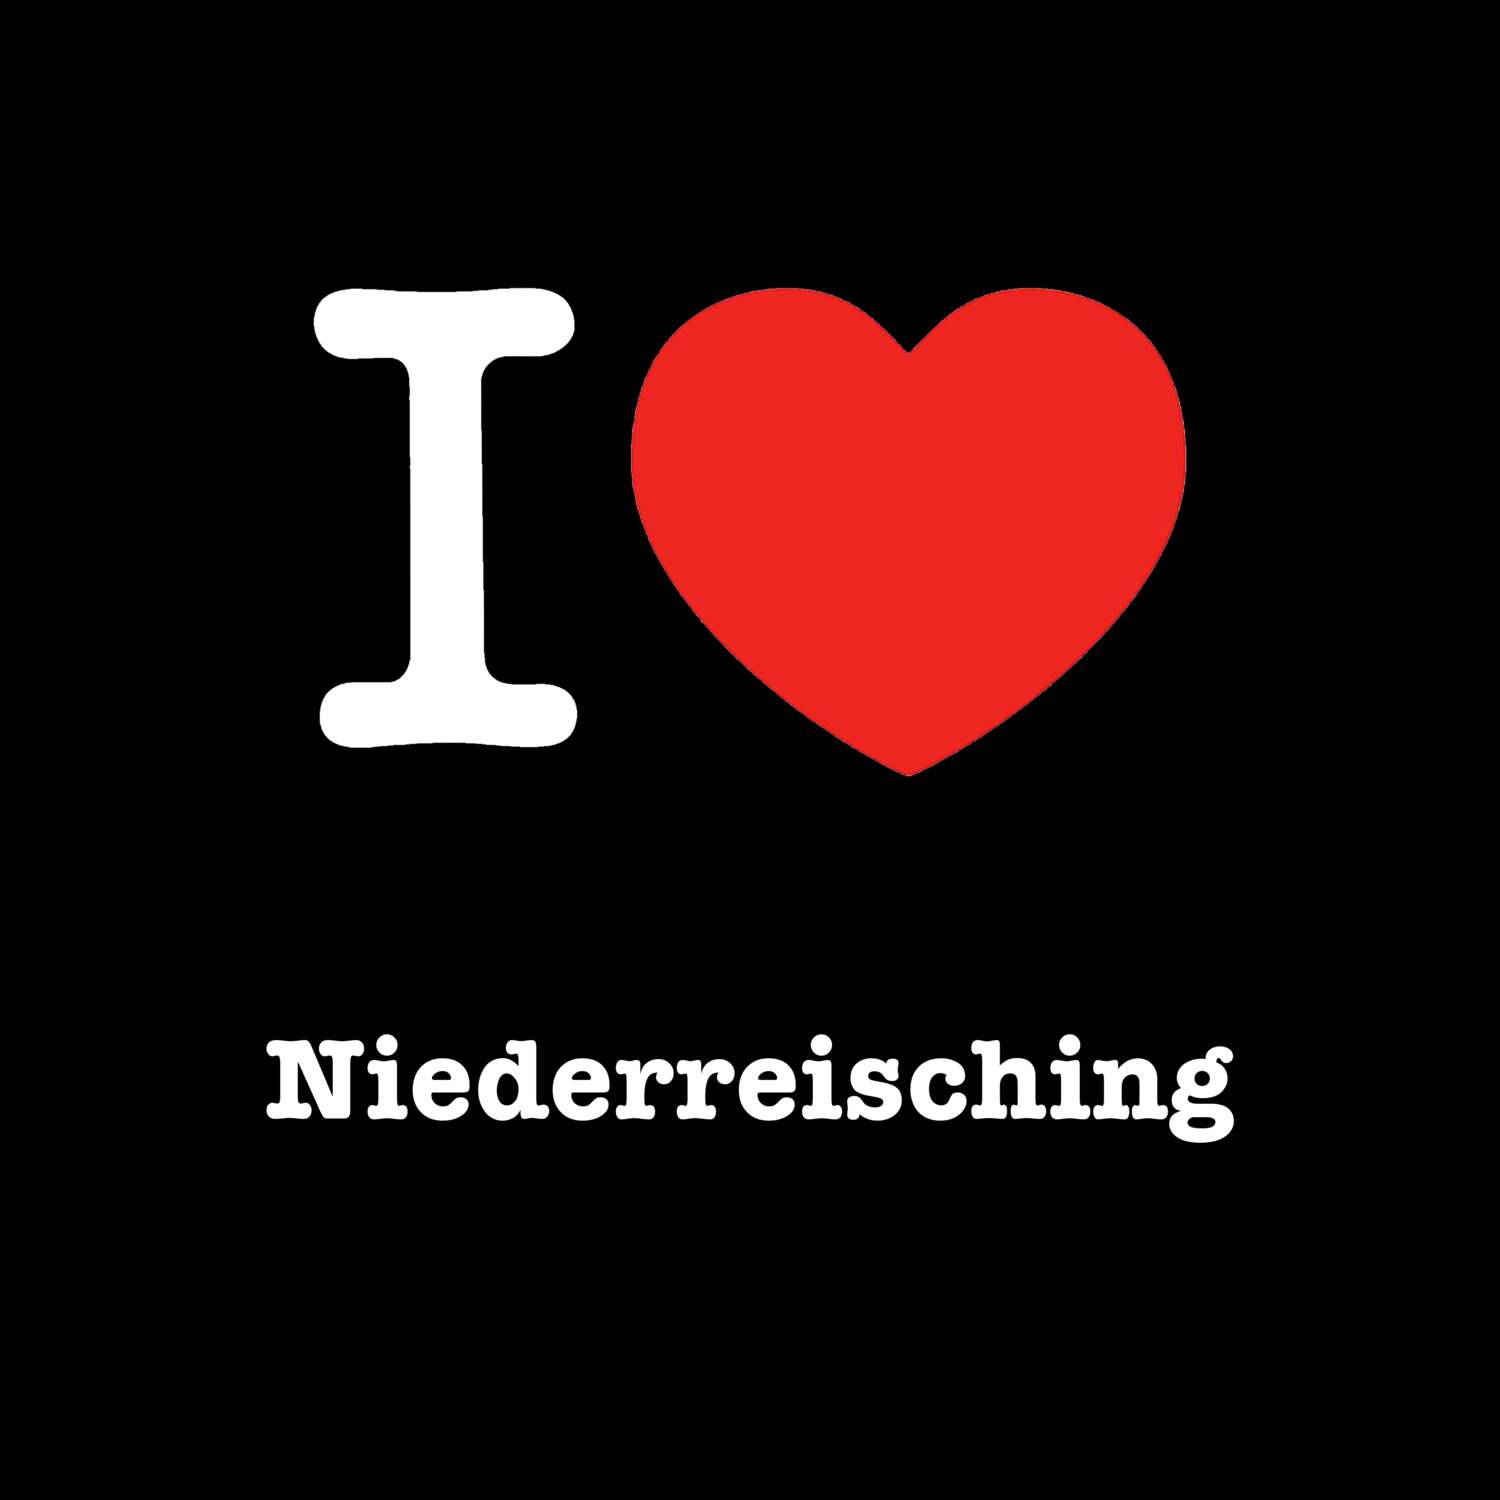 Niederreisching T-Shirt »I love«